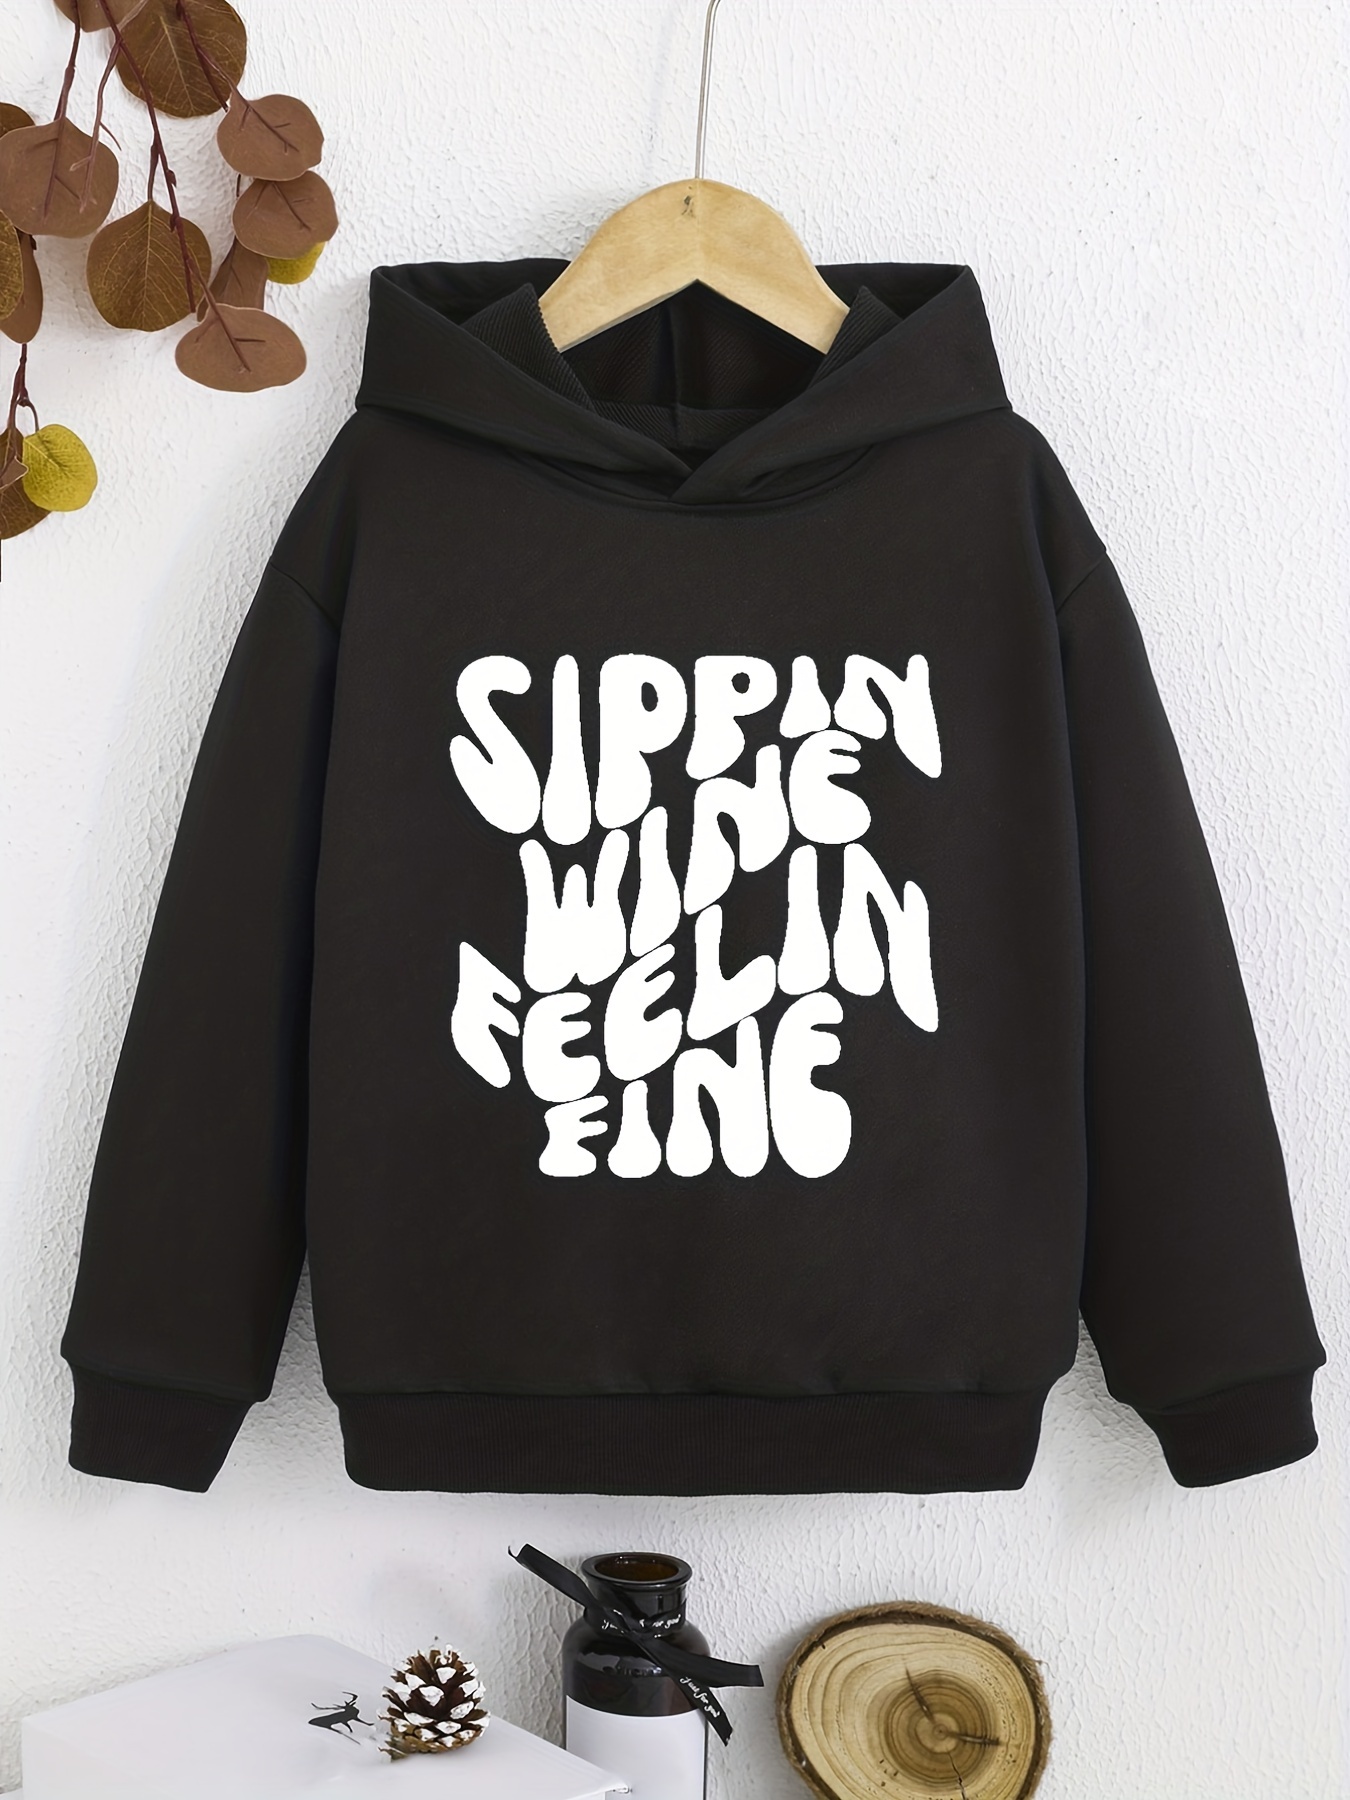 Graphic Hoodies for Women & Teen Girls - Funny Sayings Sweatshirts